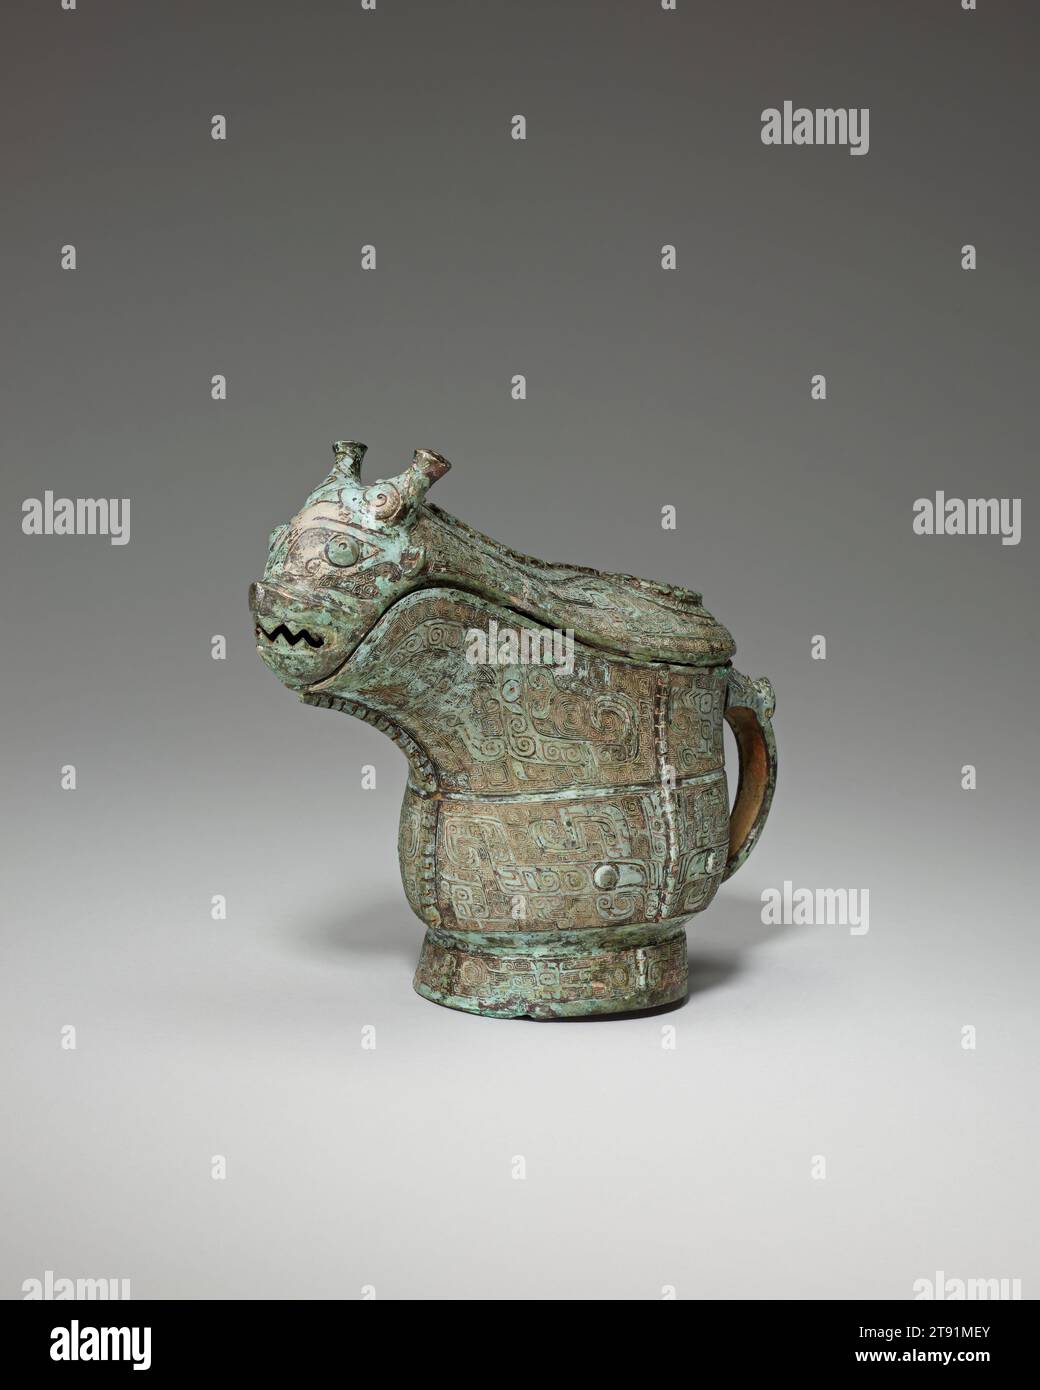 Récipient à vin Gong, fin du 13e siècle av. J.-C., 7 × 9 5/16 × 2 1/16 po., 2,9 lb. (17,78 × 23,65 × 5,24 cm, 1,3 kg)3 7/8 × 3 1/16 po. (9,84 × 7,78 cm) (partie de l'objet, pied), Bronze, Chine, 13e siècle av. J.-C., le gong est un type de récipient rituel utilisé pour servir le vin. Il a été produit principalement pendant les règnes du roi Wu et du roi Zhao à la fin des dynasties Shang (c. 1300–1046 av. J.-C.) et des premiers Zhou occidentaux (c. 1046–977 av. J.-C.) Banque D'Images